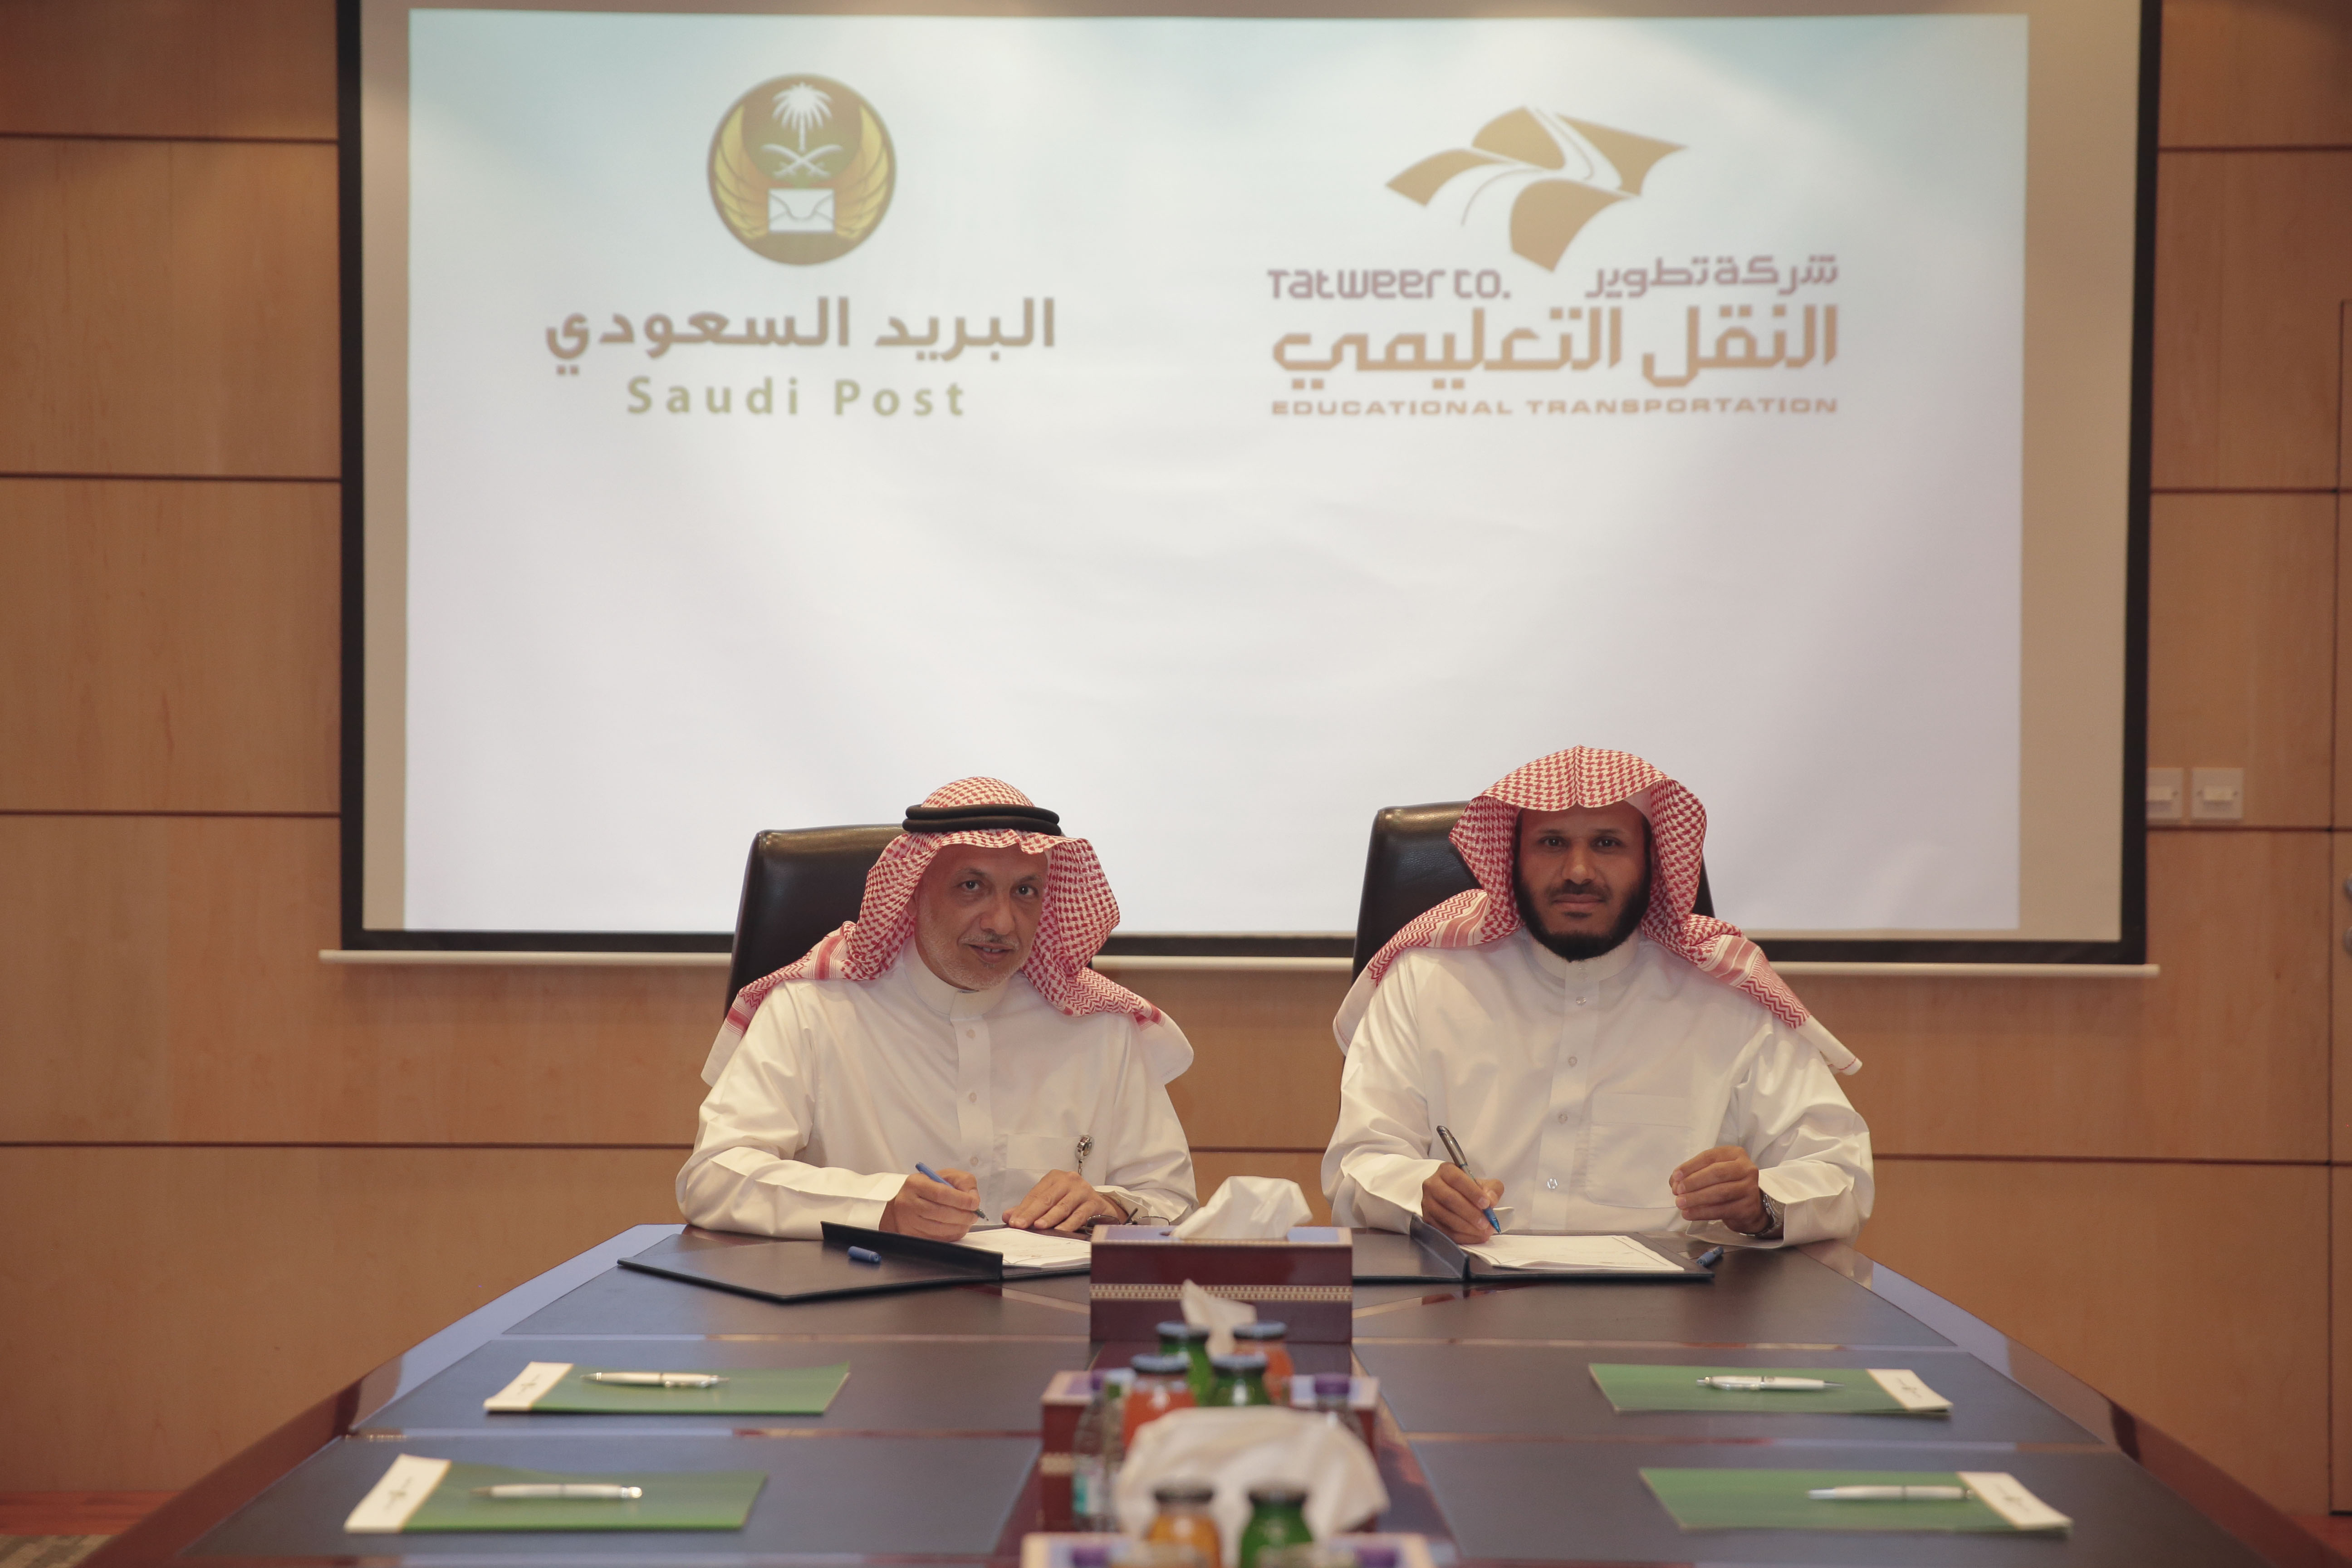  البريد السعودي يوقع اتفاقية مع شركة تطوير لخدمات النقل التعليمي